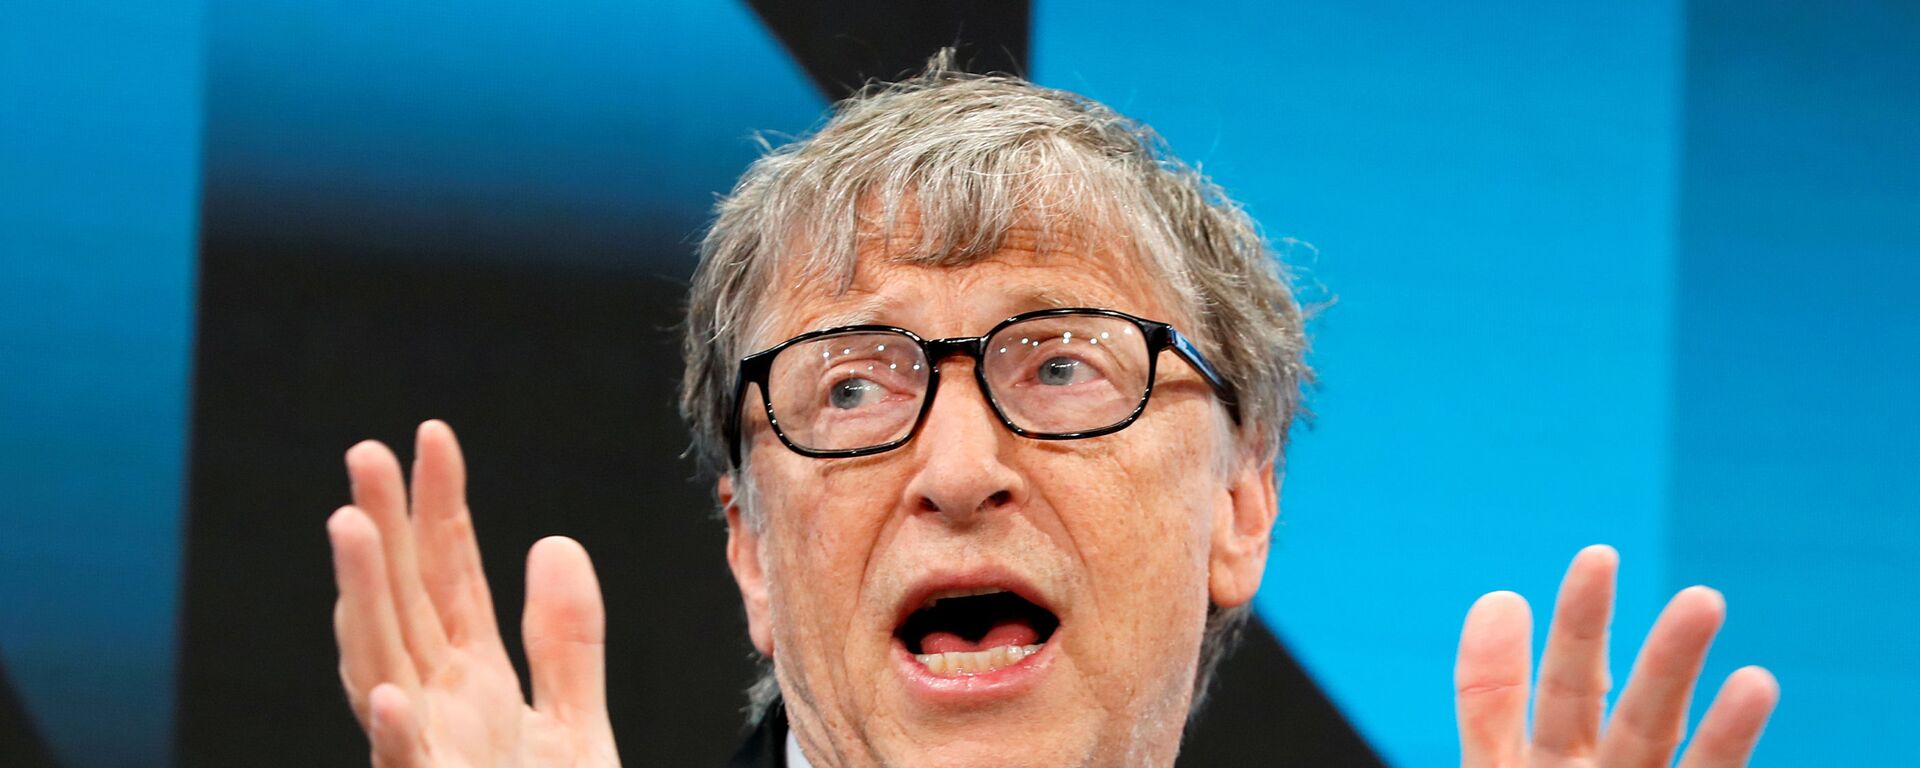 Билл Гейтс выступает на ежегодной встрече Всемирного экономического форума (ВЭФ) в Давосе, Швейцария, 22 января 2019 года - Sputnik Azərbaycan, 1920, 31.01.2021